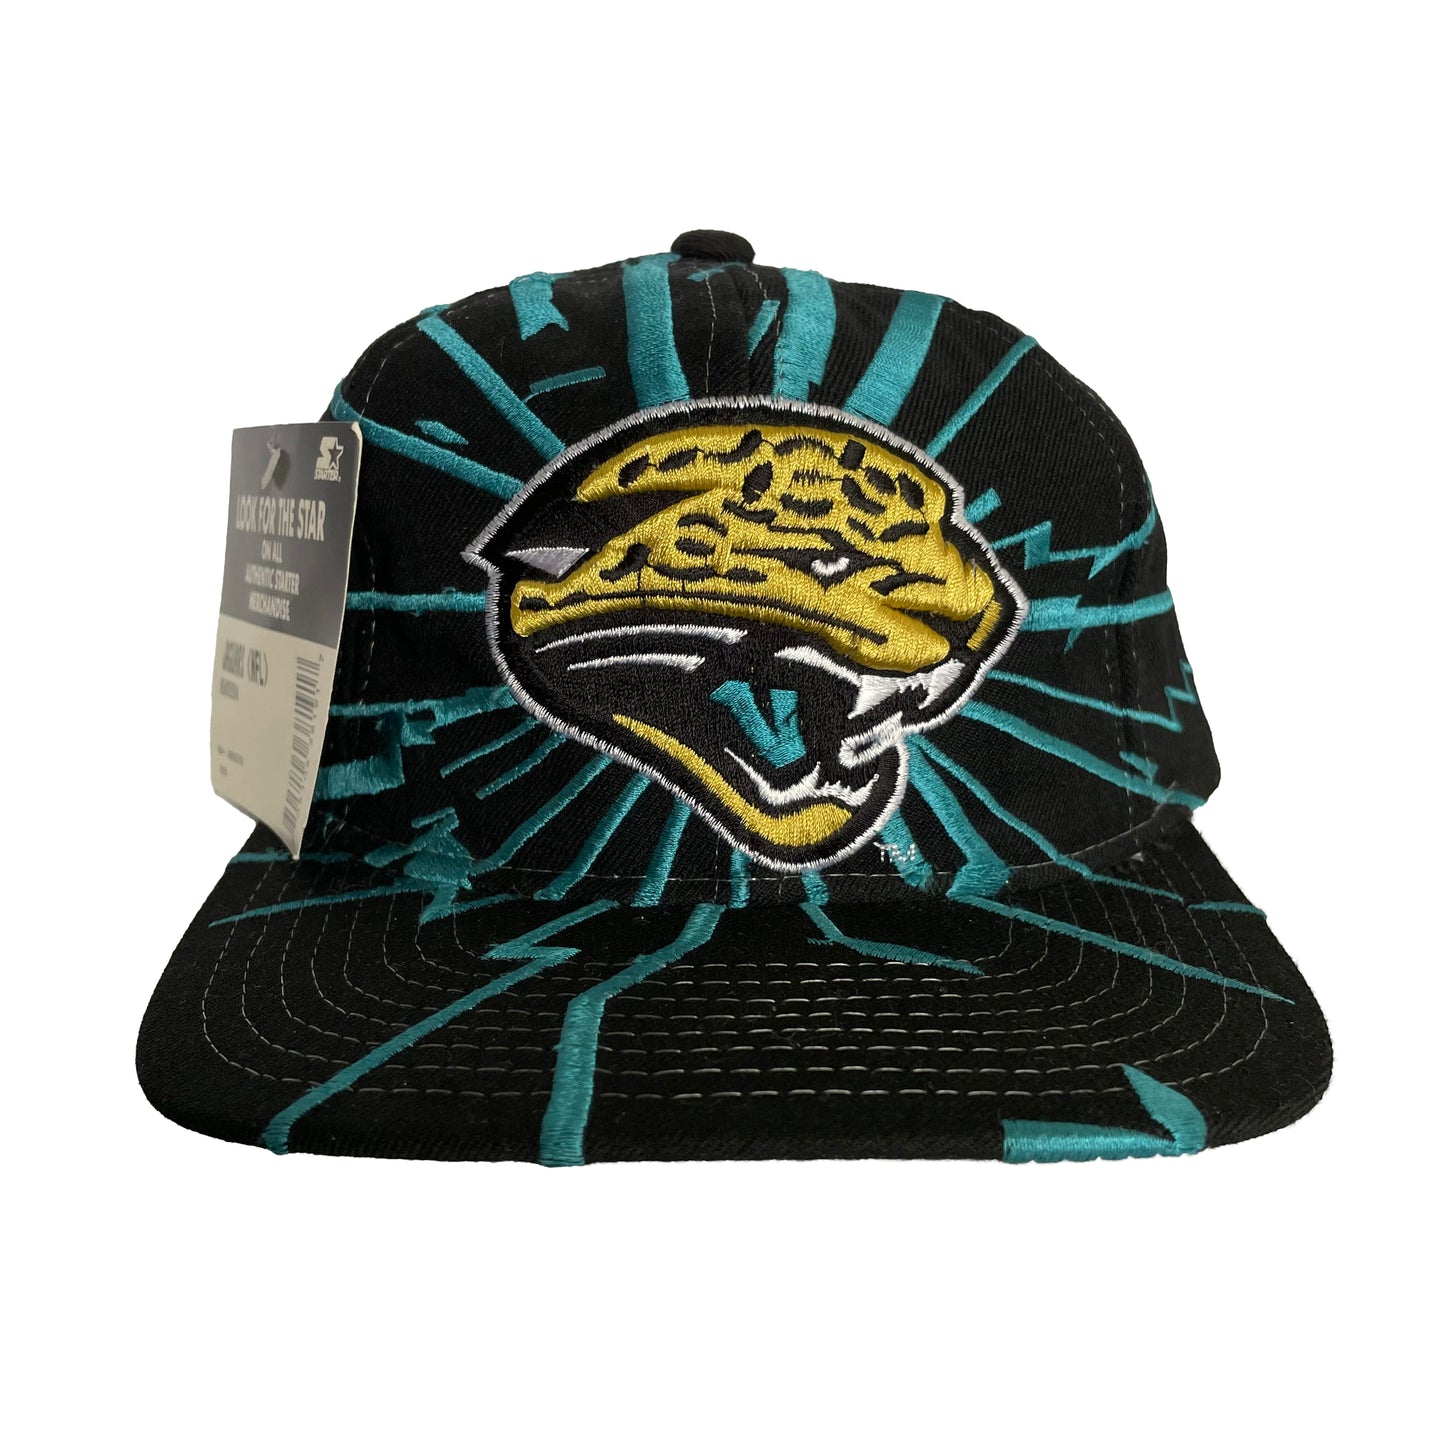 Jacksonville Jaguars "Collision/Shatter" deadstock hat